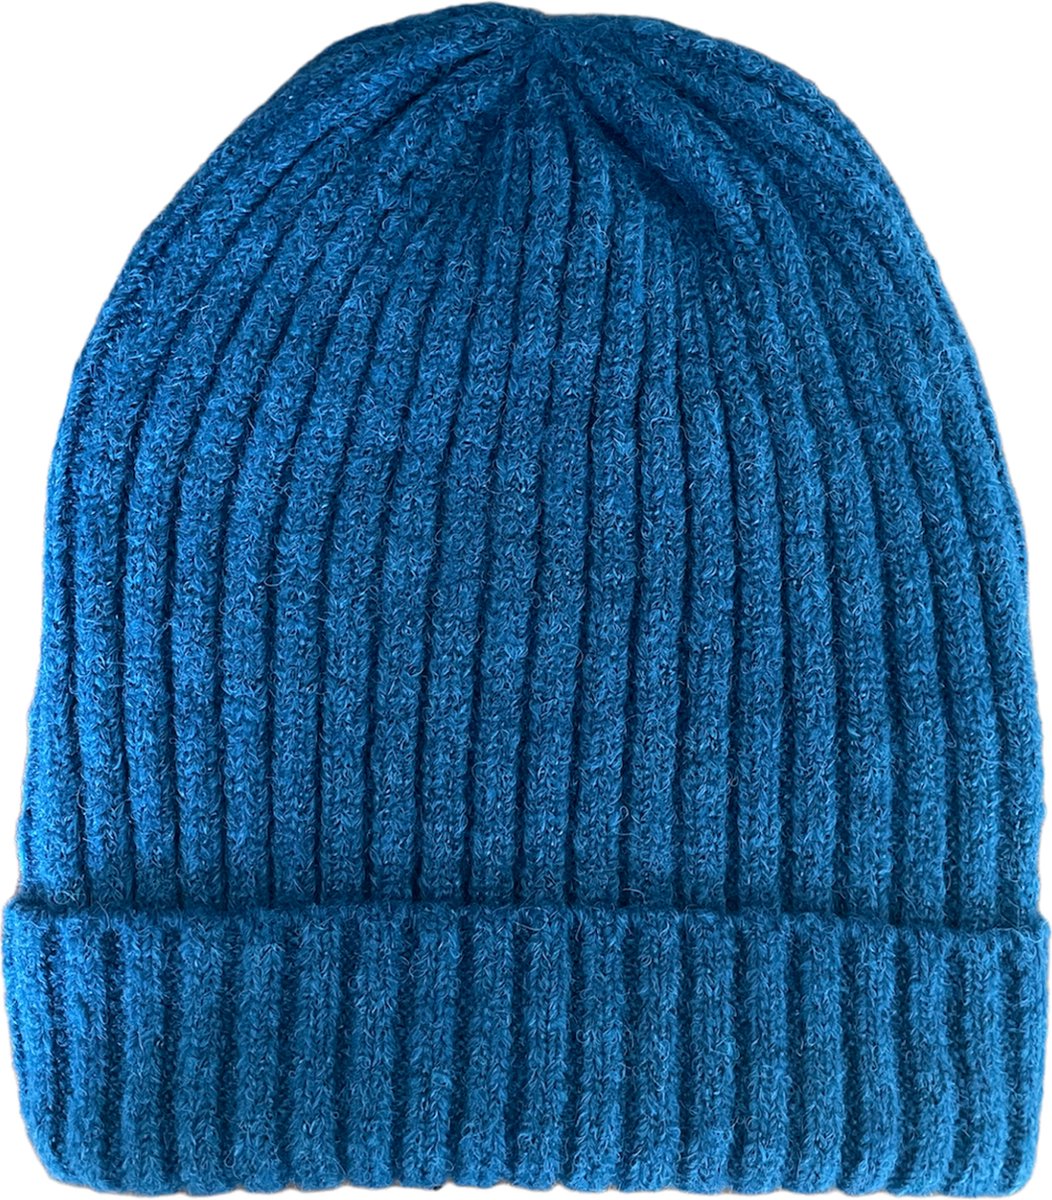 ASTRADAVI Beanie Hats - Muts - Warme Skimutsen Hoofddeksels - Trendy Winter Mutsen - Blauw